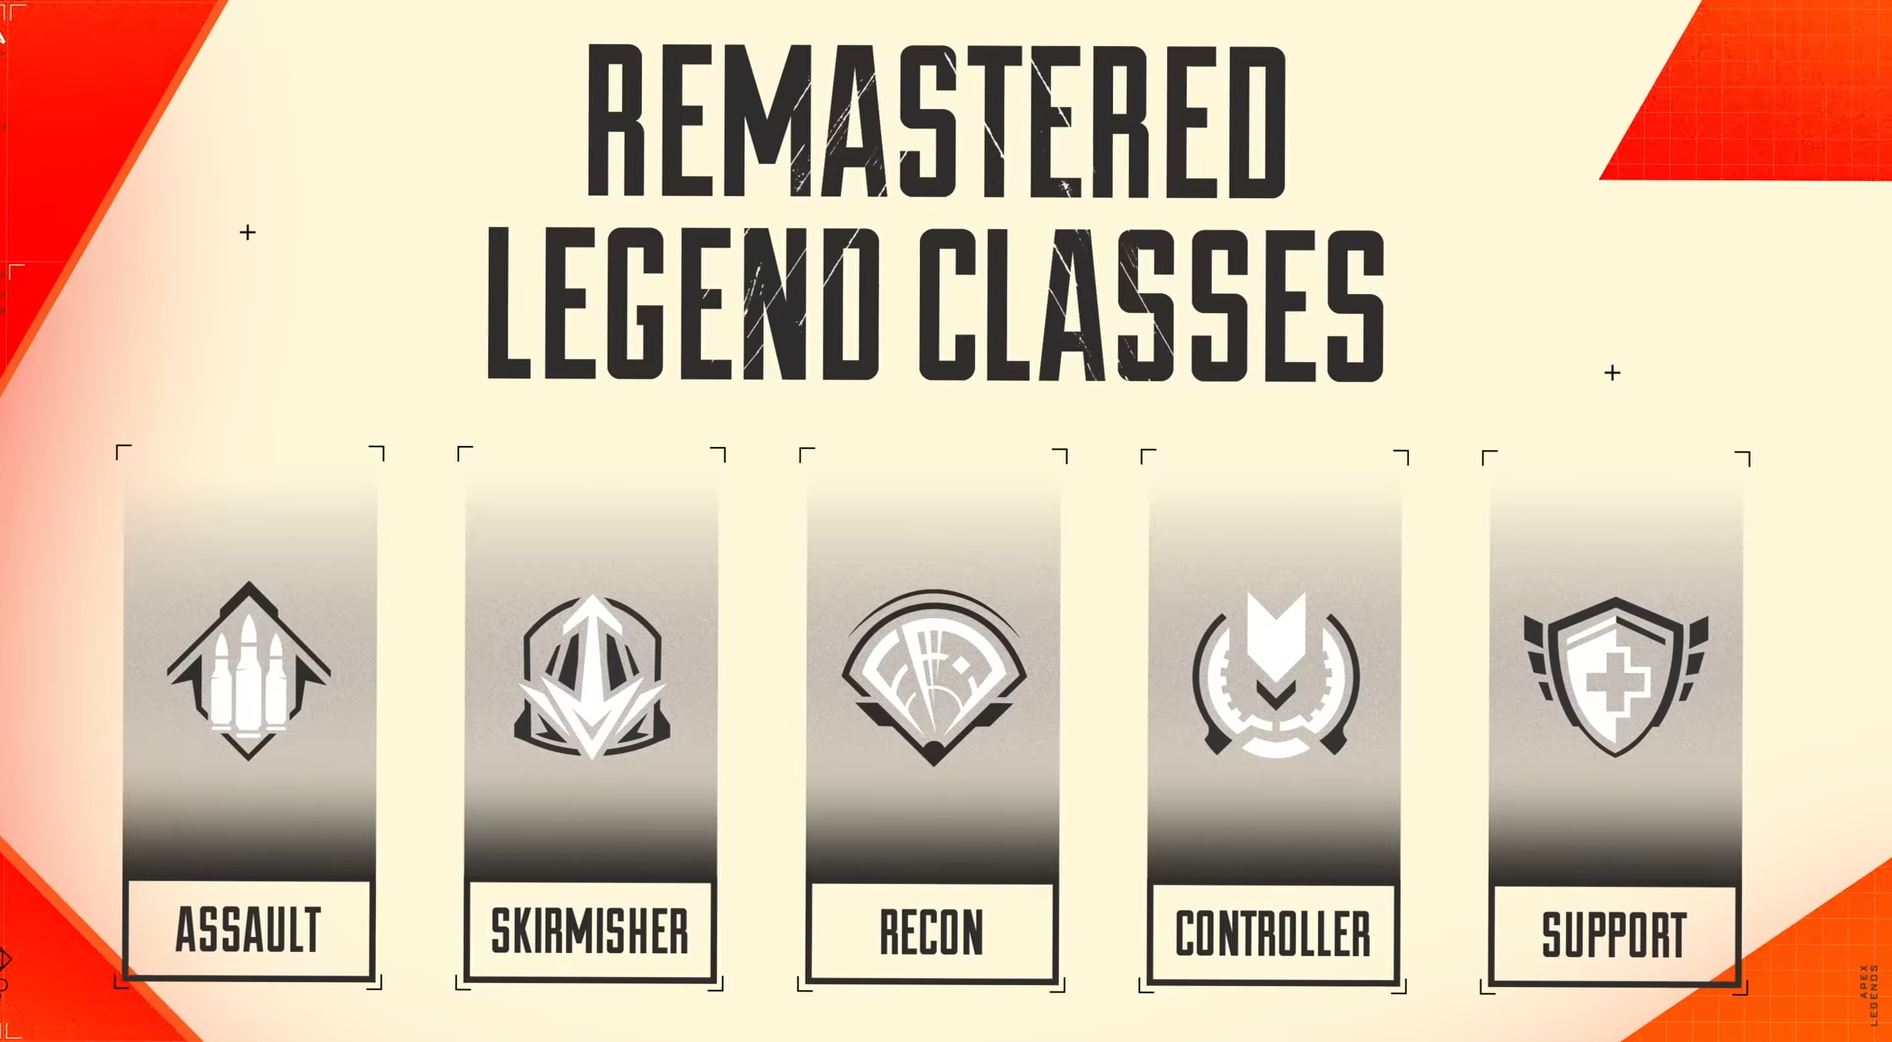 Clases remasterizadas en Apex Legends